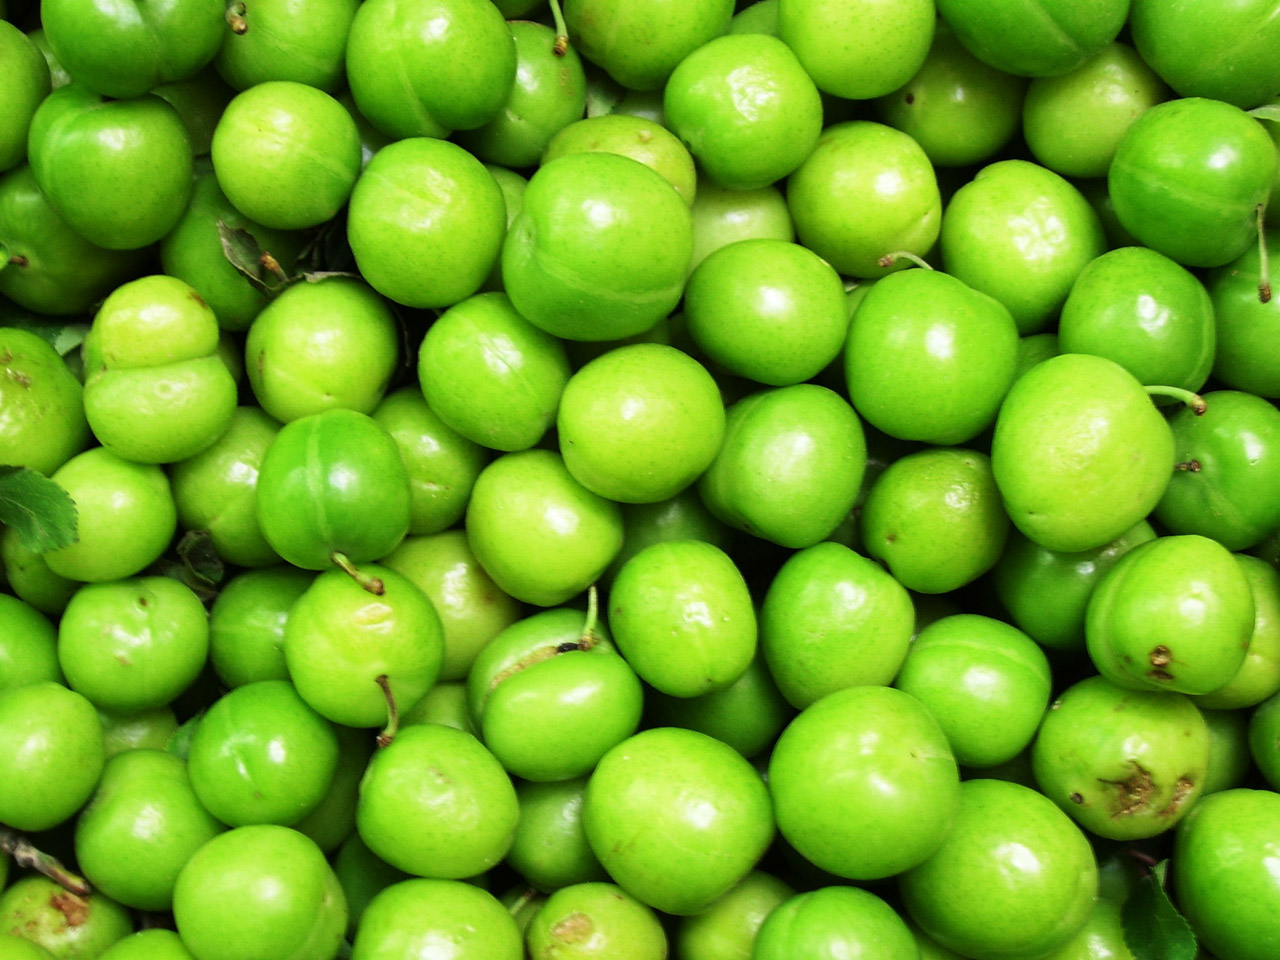 Curar olivas verdes